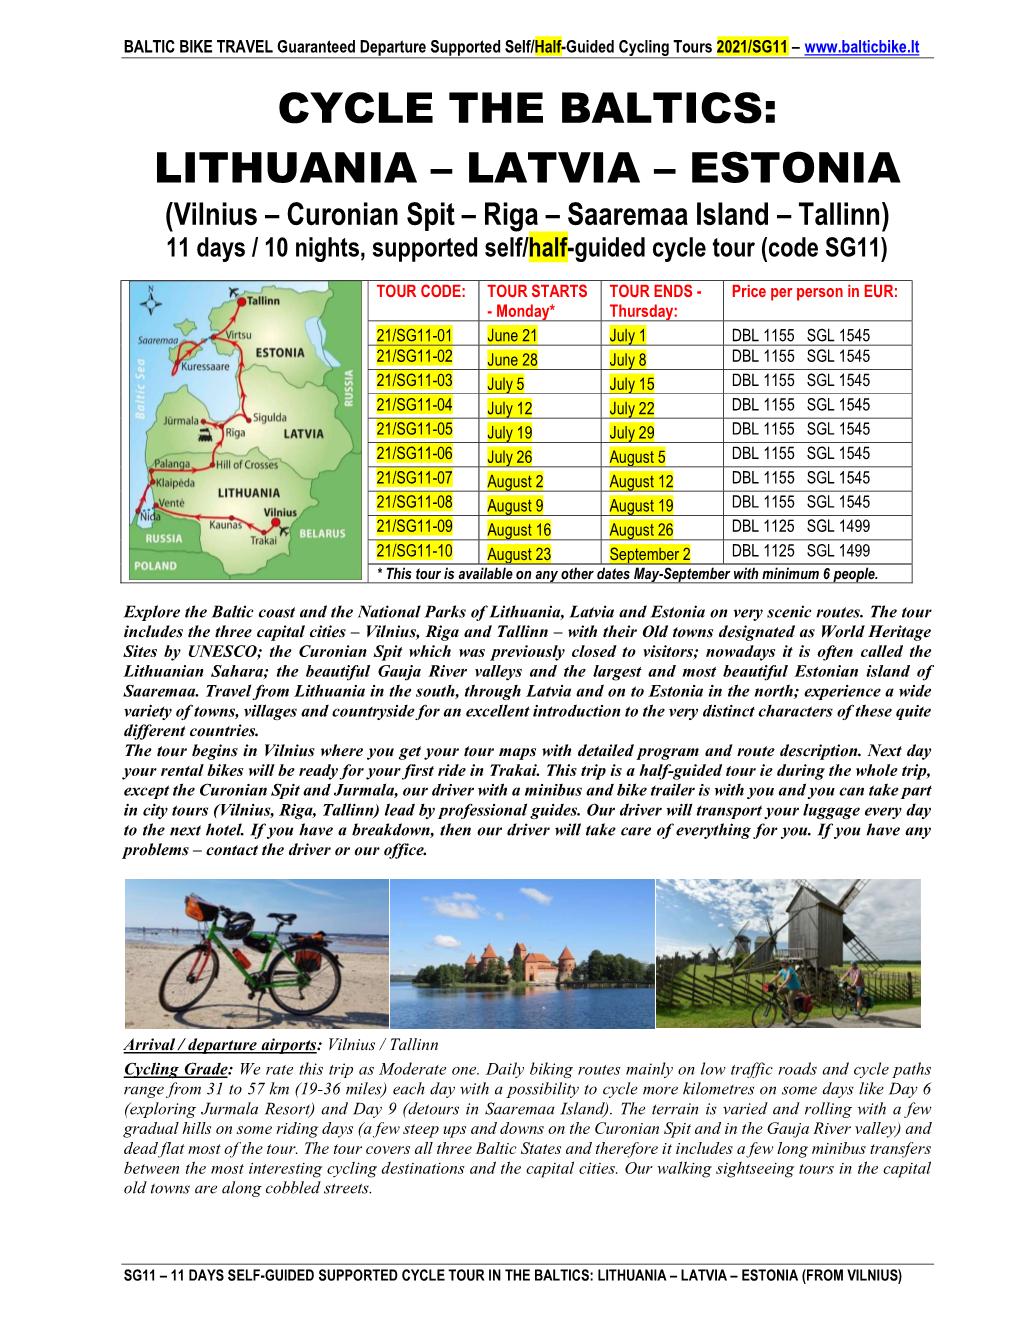 Cycle the Baltics: Lithuania – Latvia – Estonia